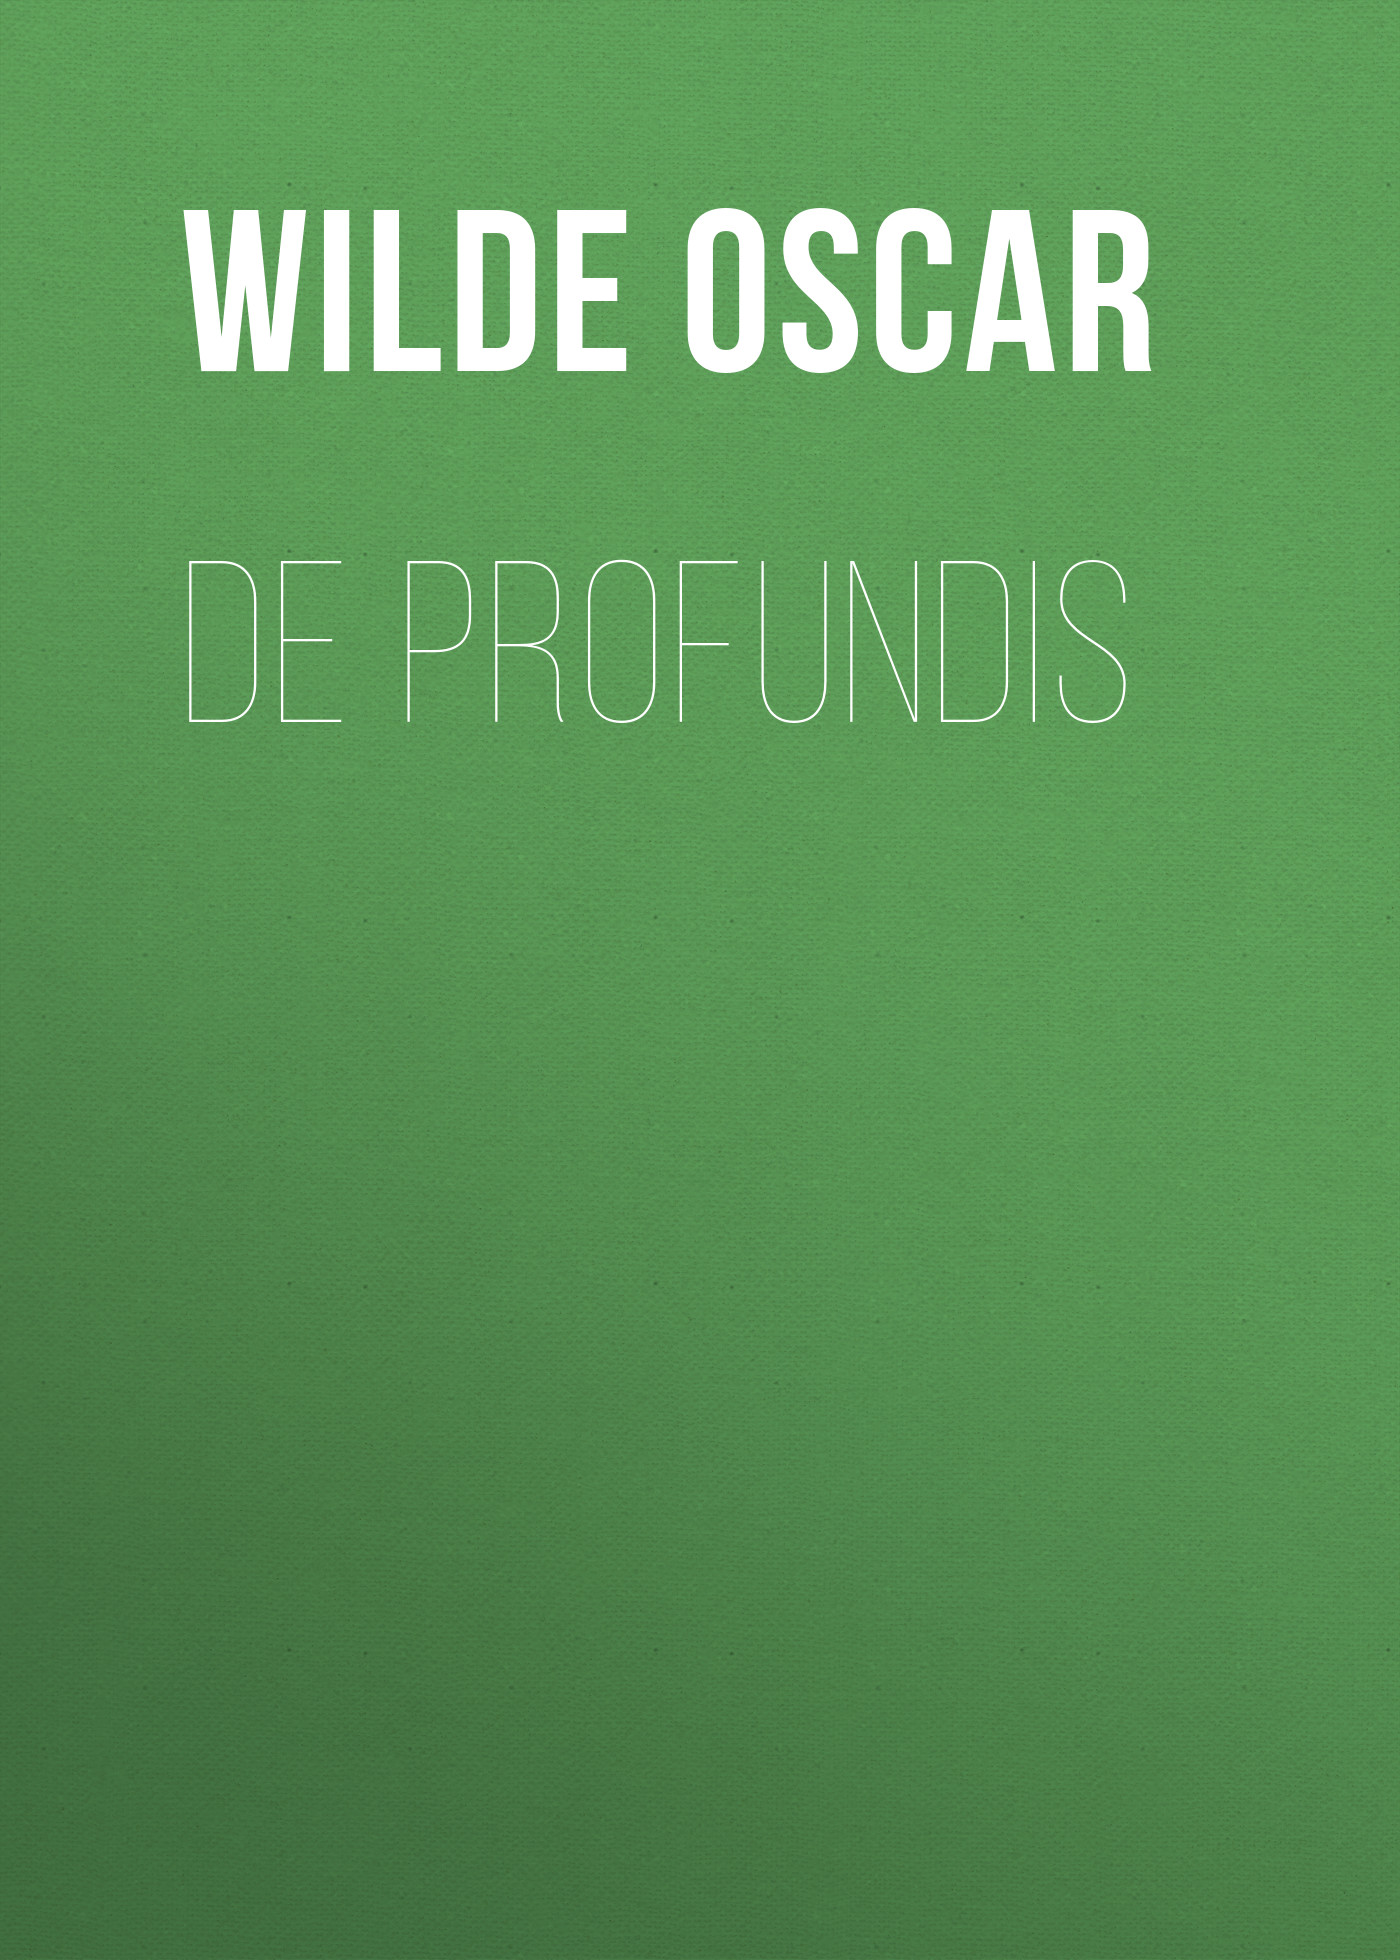 Книга De profundis из серии , созданная Oscar Wilde, может относится к жанру Зарубежная классика, Литература 19 века. Стоимость электронной книги De profundis с идентификатором 25560356 составляет 0 руб.